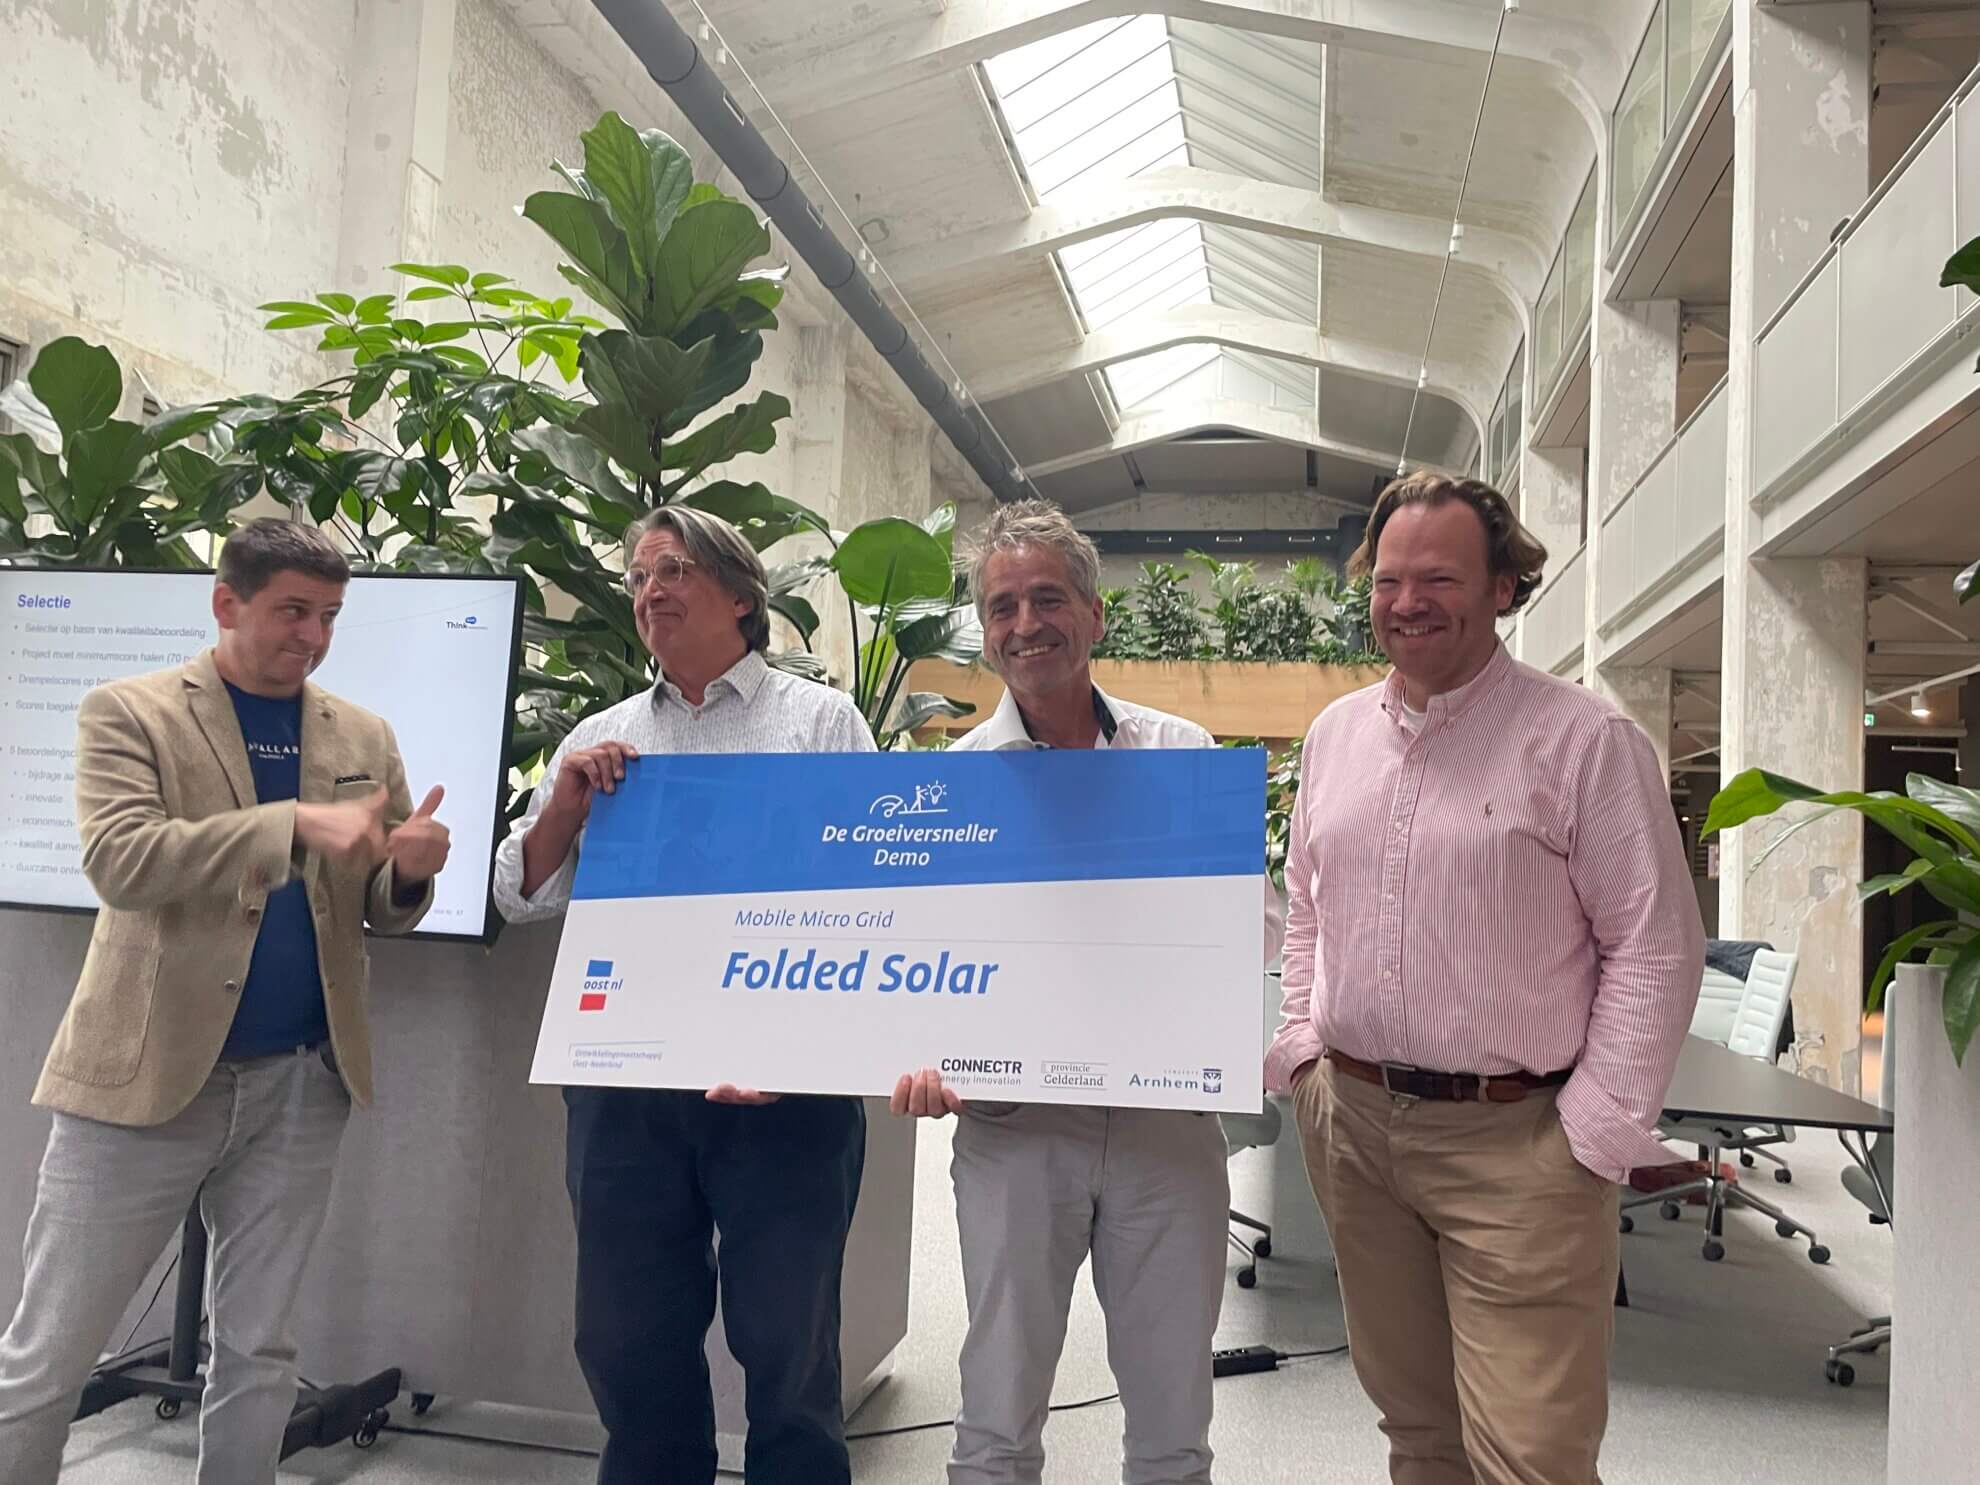 Groeiversneller Demonstratie Energie uitgereikt aan Folded Solar